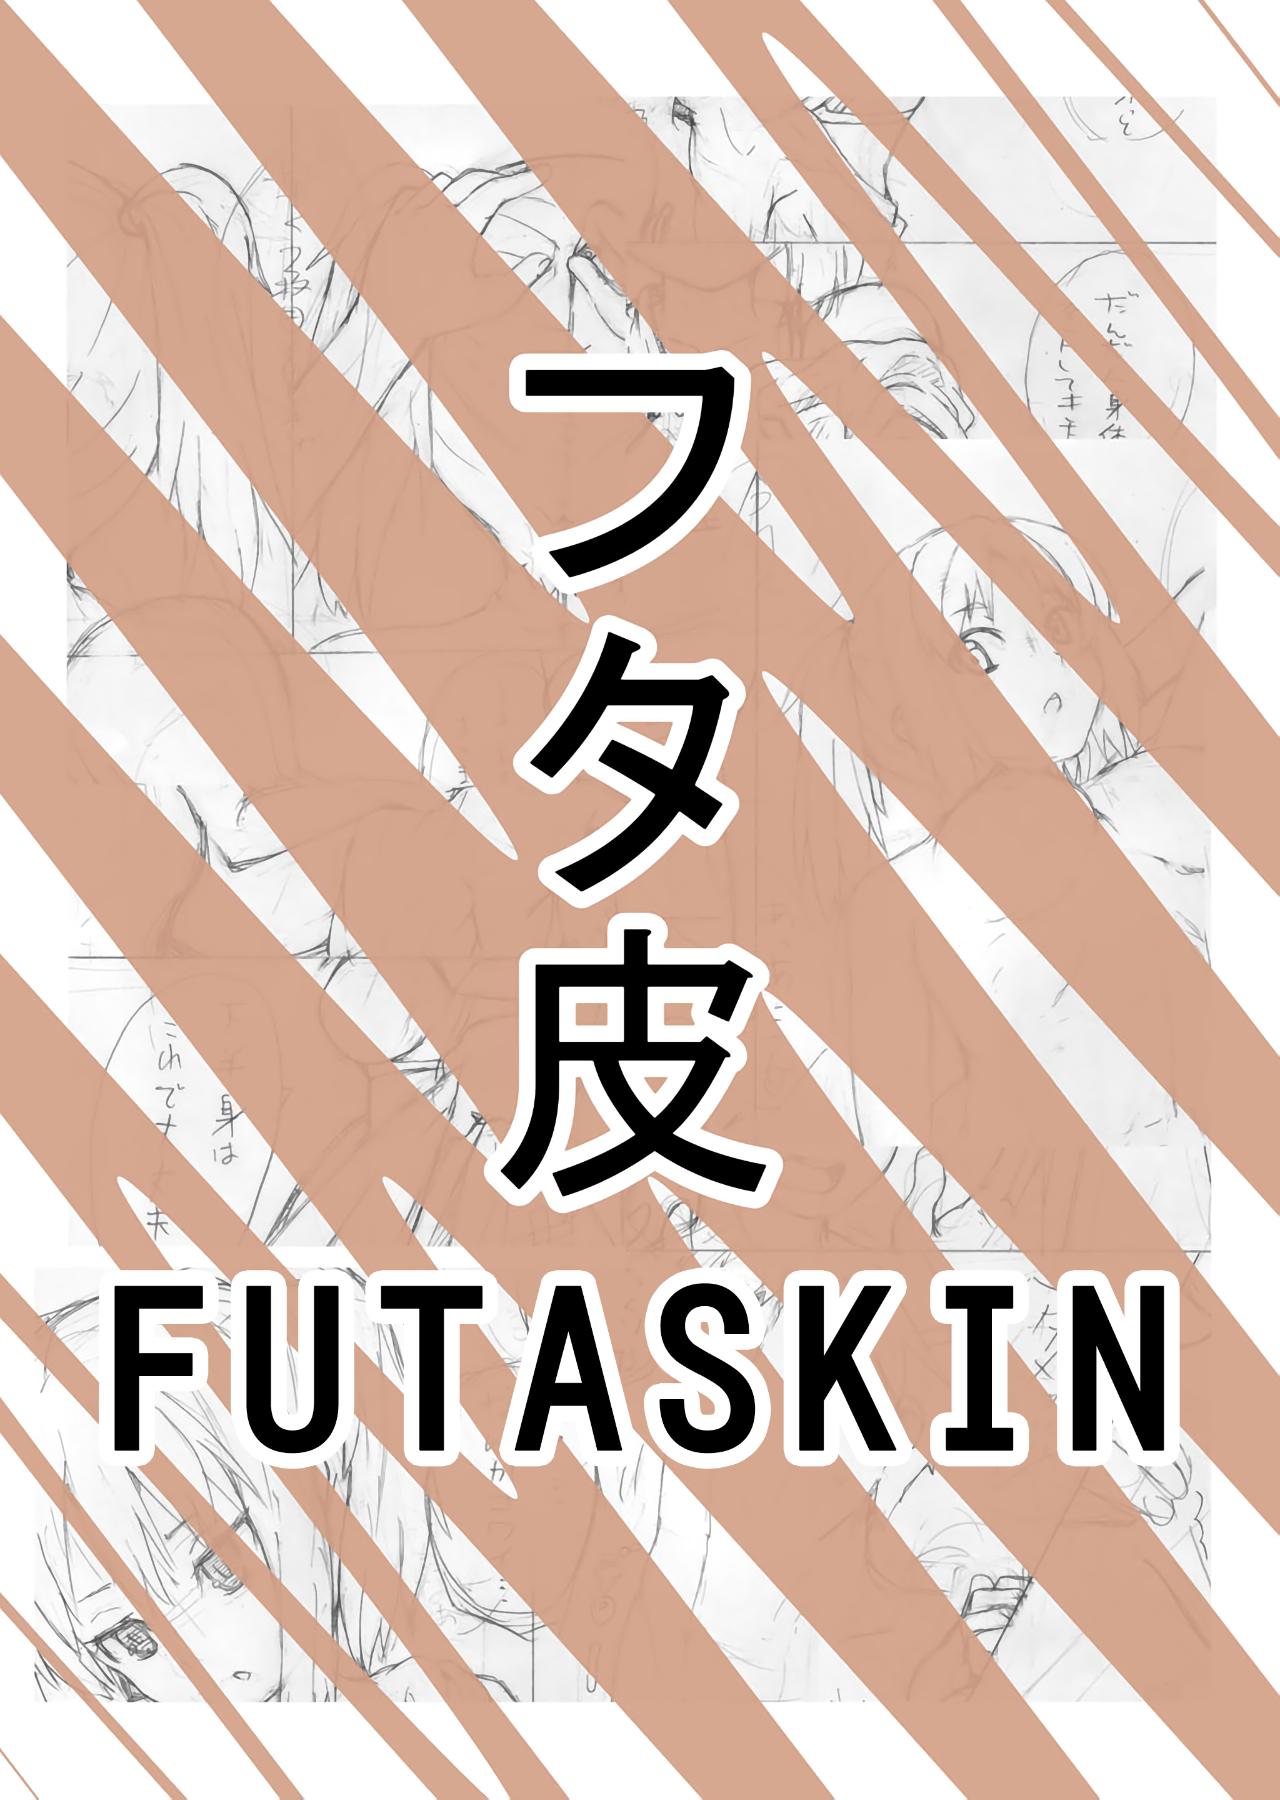 Futaskin  by Miyuki 1